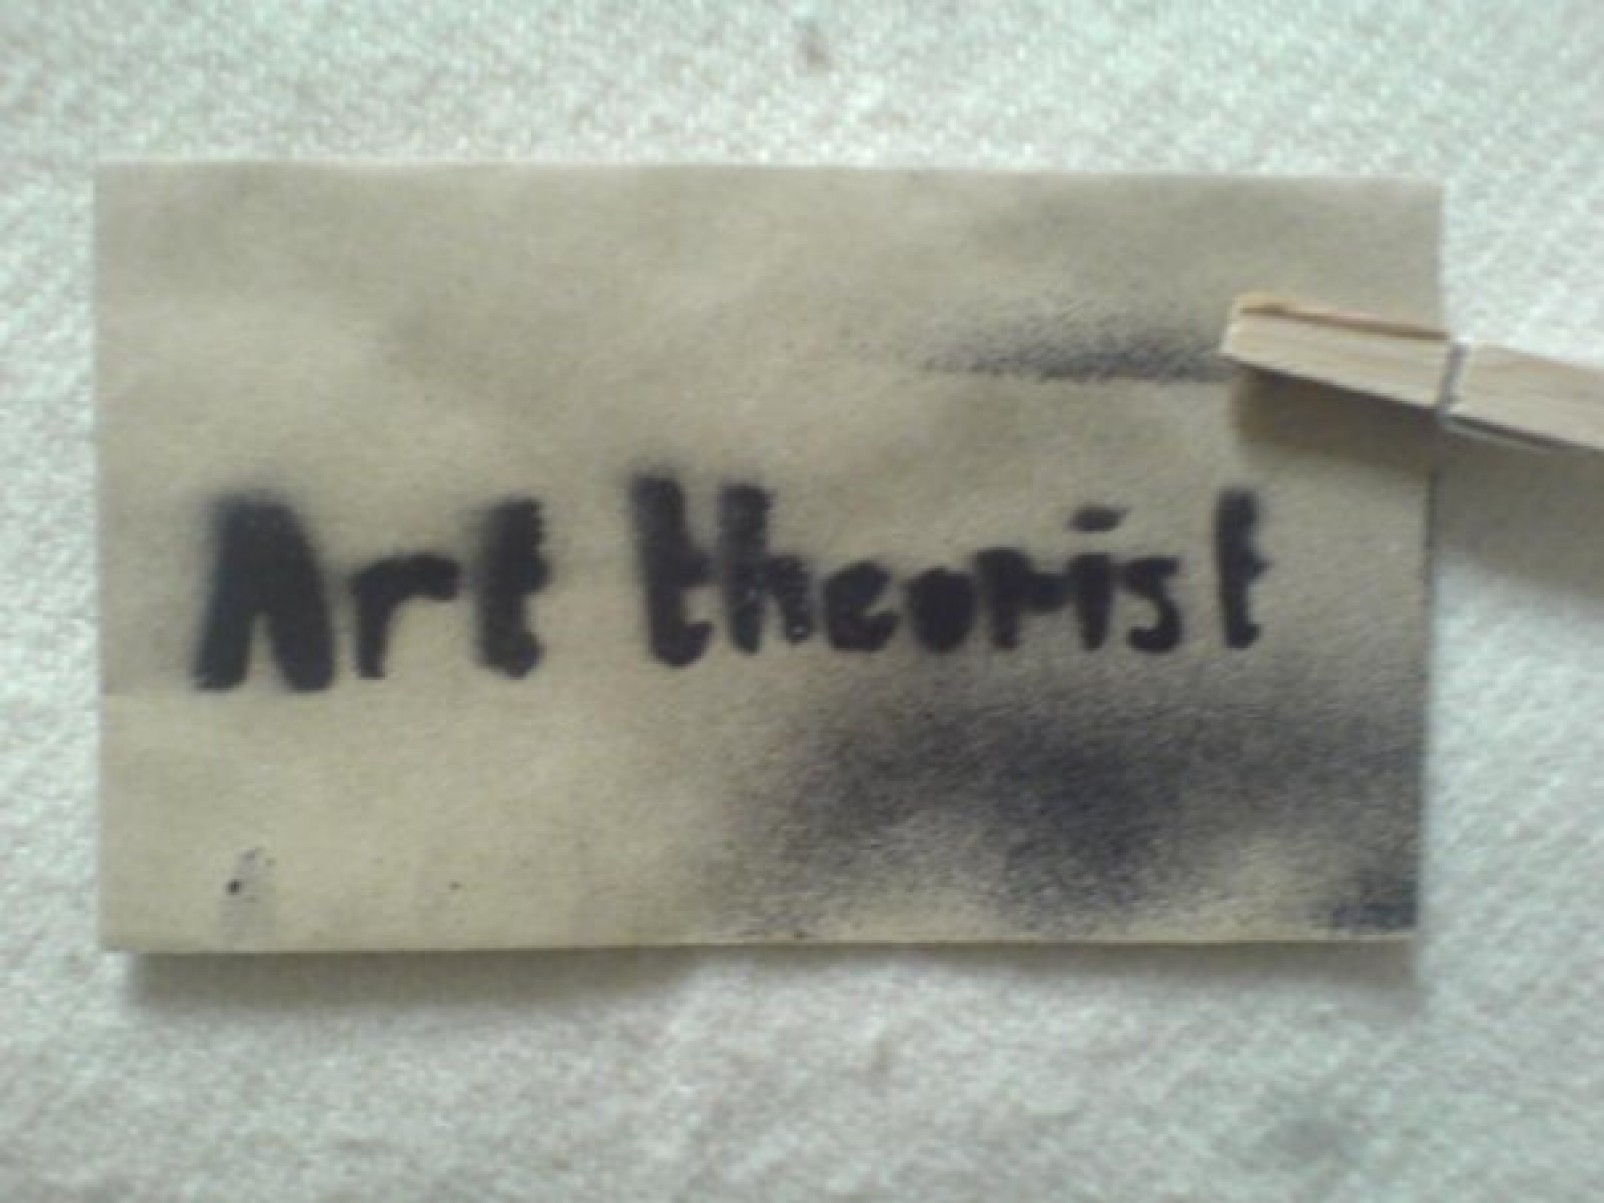 Art Theorist